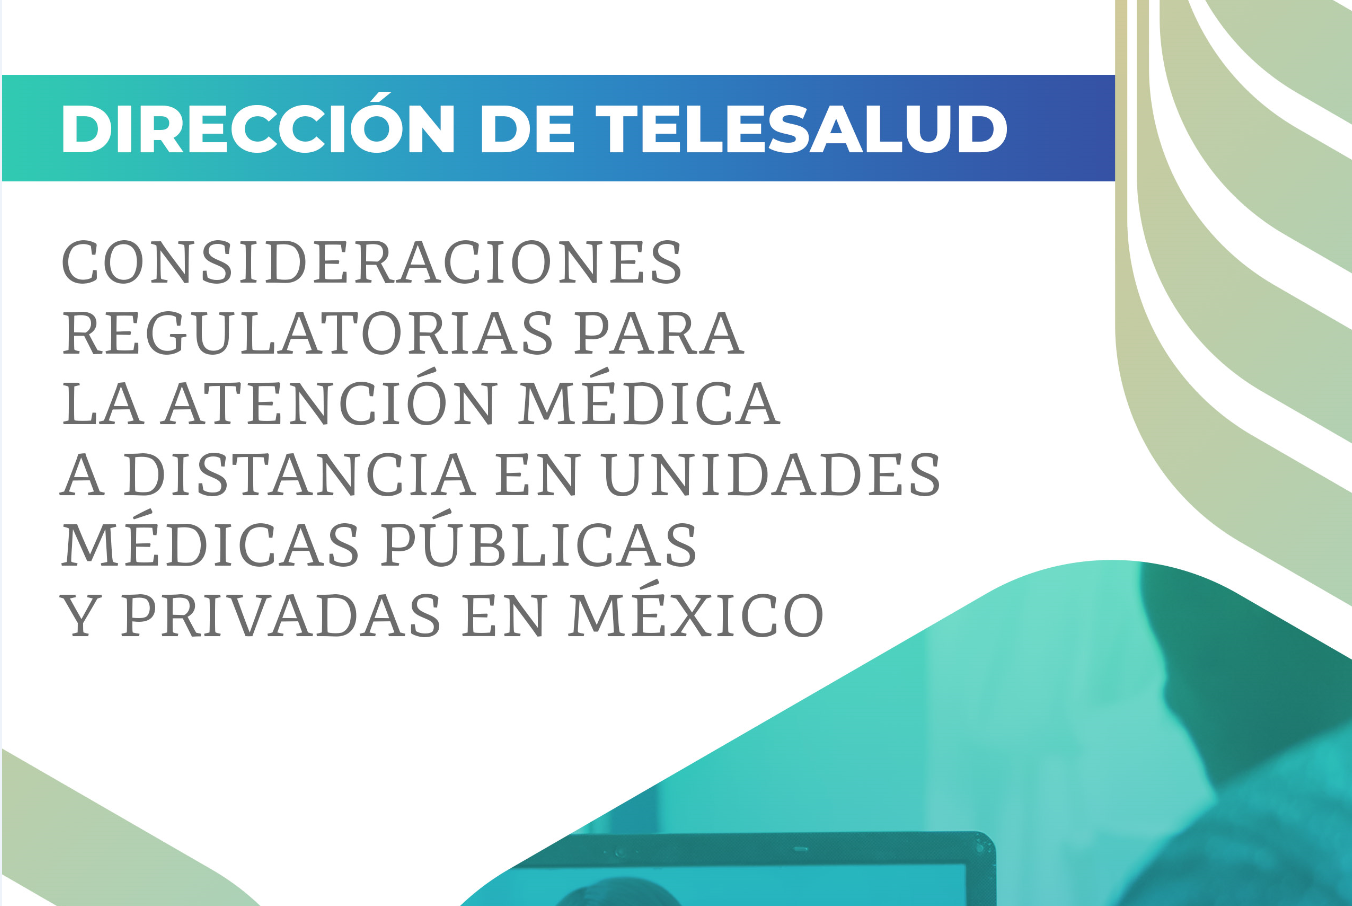 Consideraciones regulatorias para la atención médica a distancia en unidades médicas públicas y privadas en México